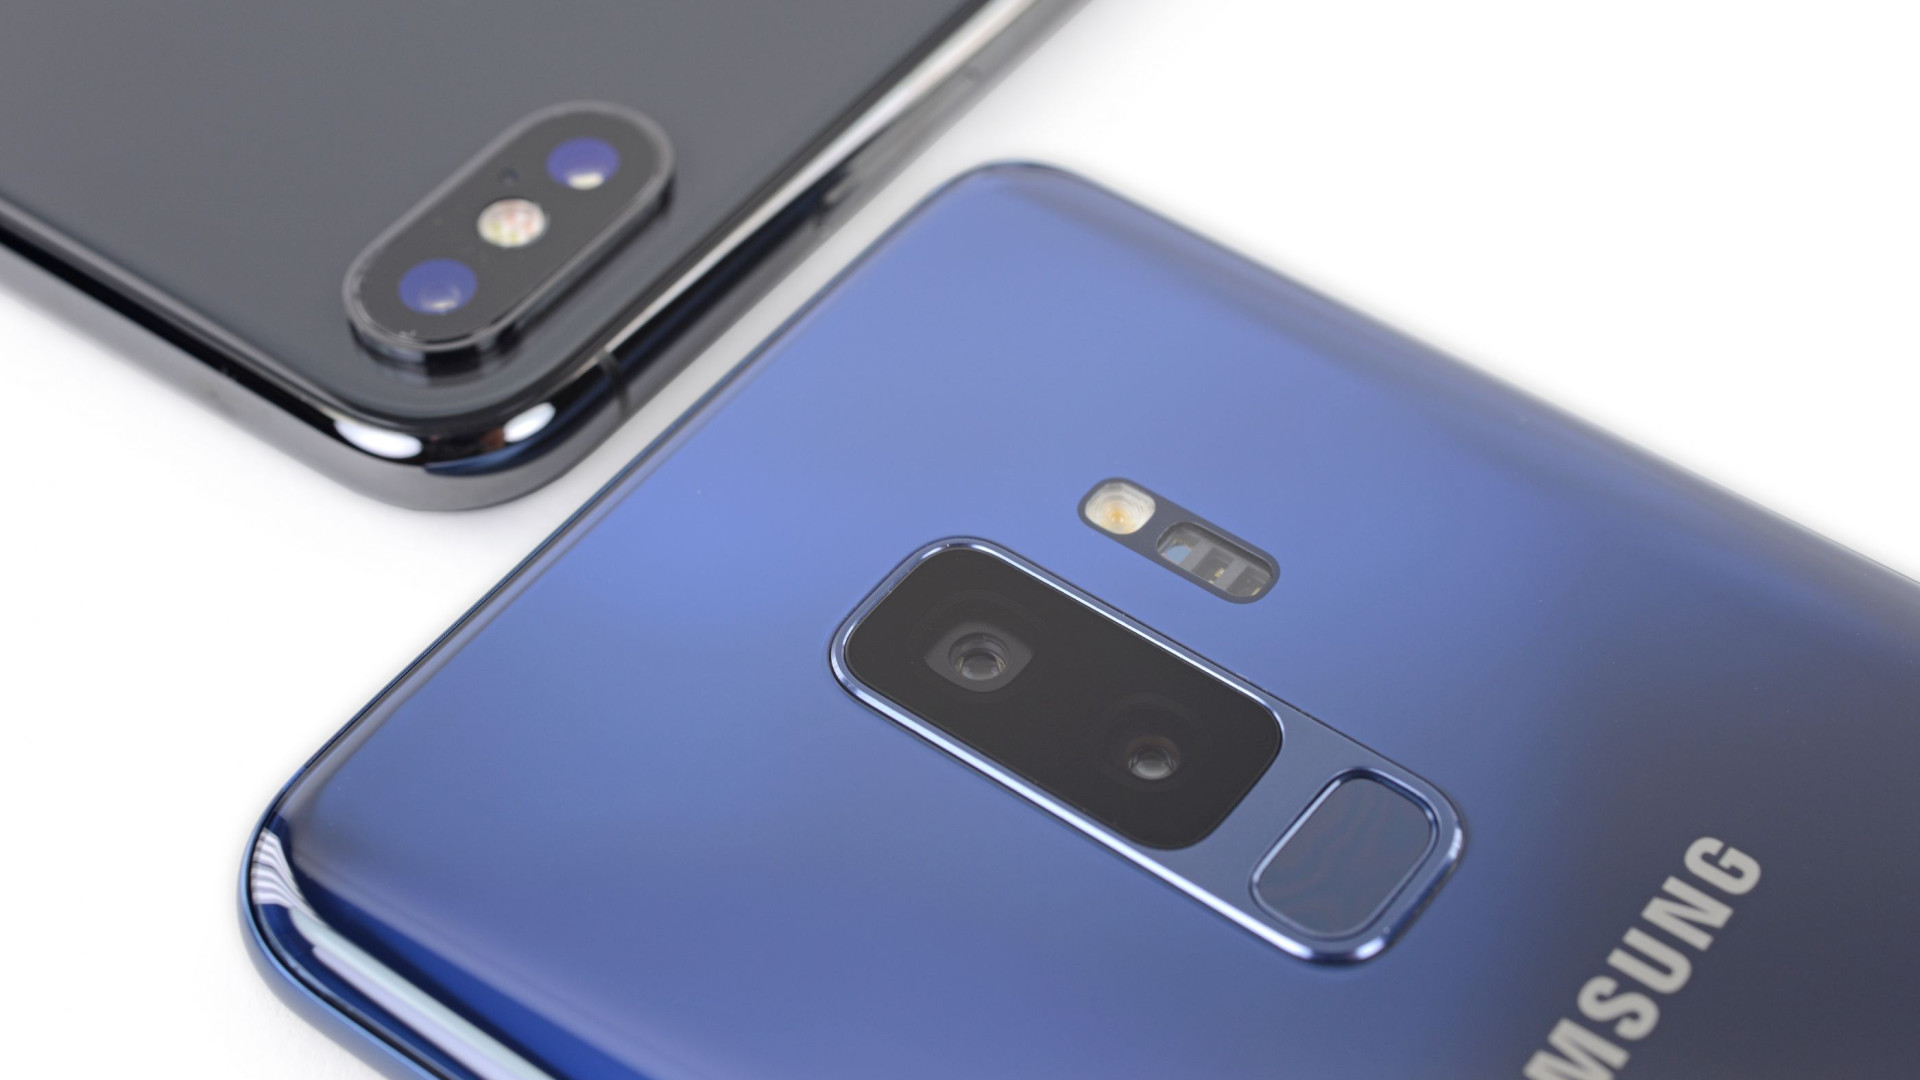 Acidentalmente, Samsung confirma próximo smartphone